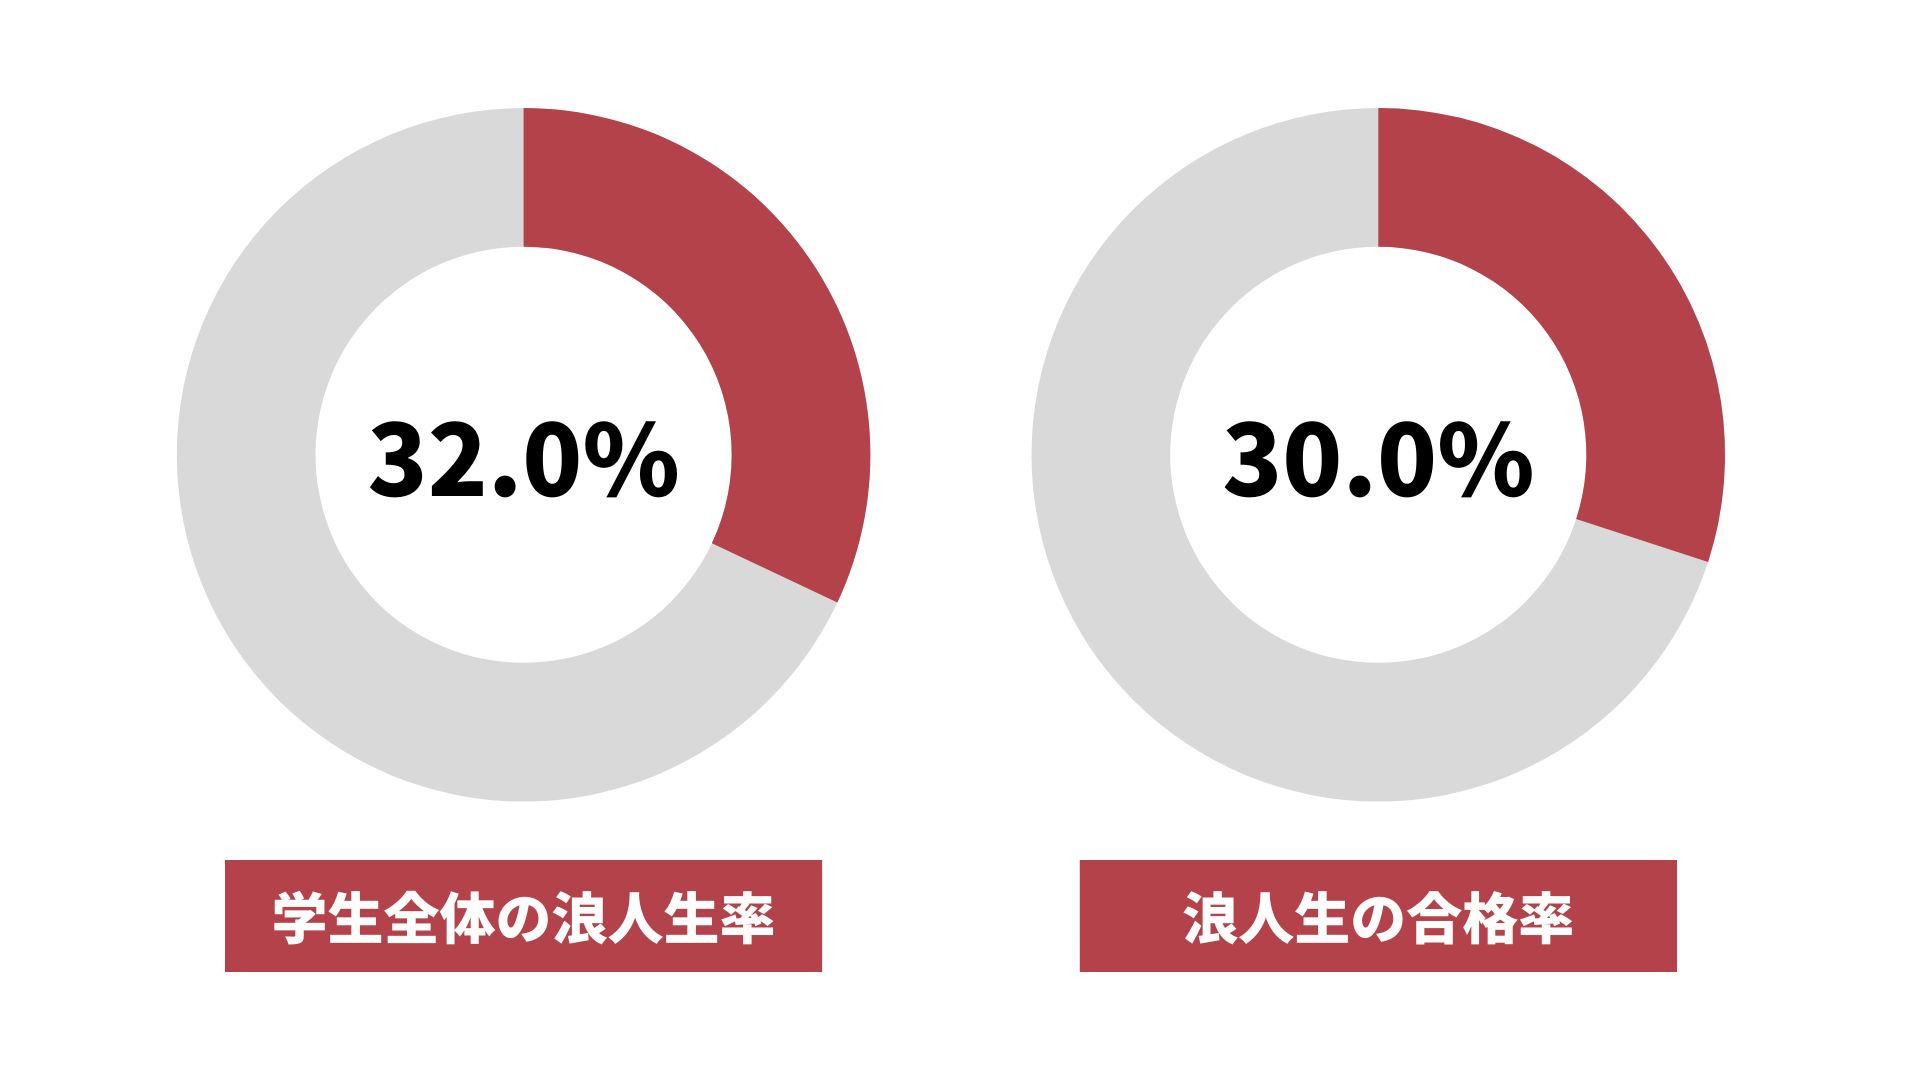 東京理科大学の浪人生の割合